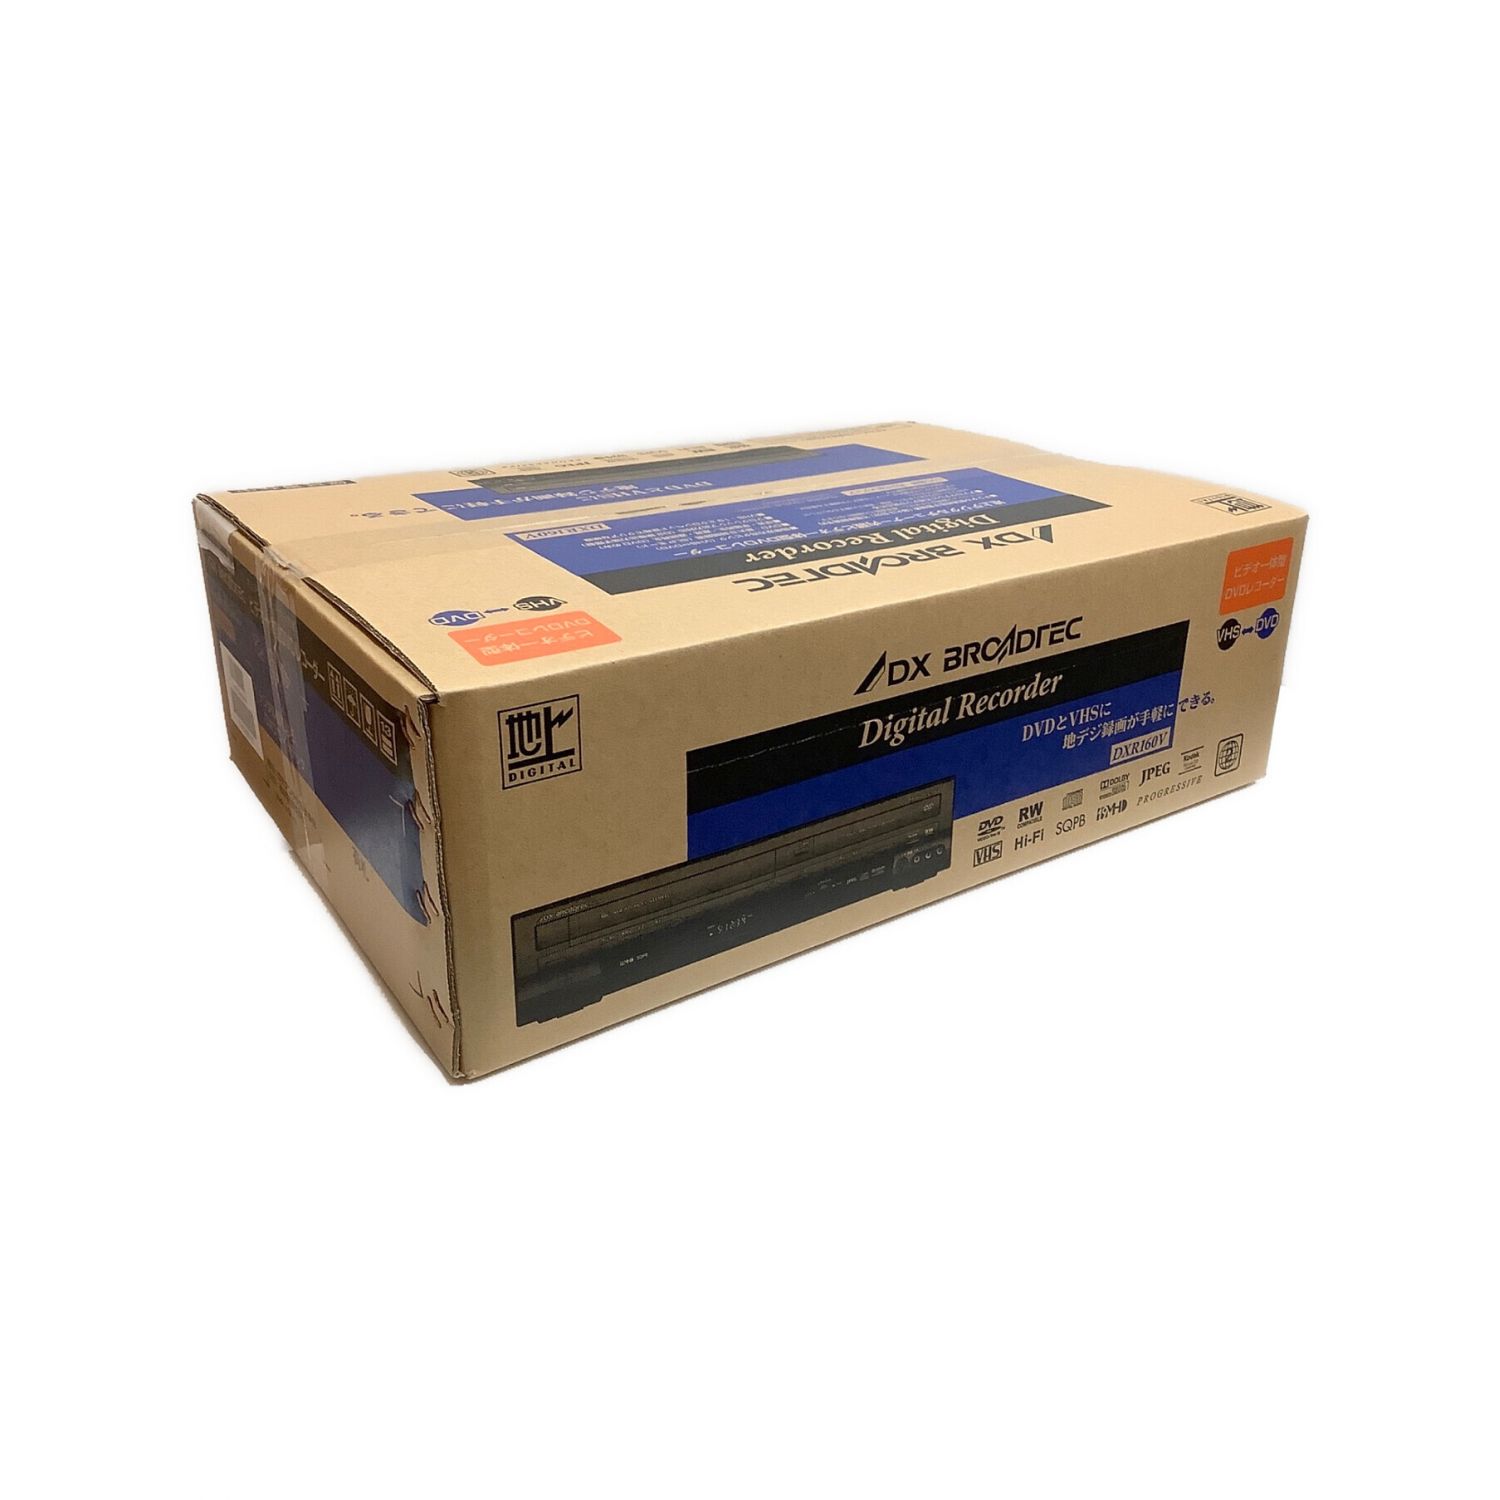 DX BROADTEC (デラックス ブローテック) VHS一体型DVDレコーダー 未開封品 DXR160V 2012年モデル ■